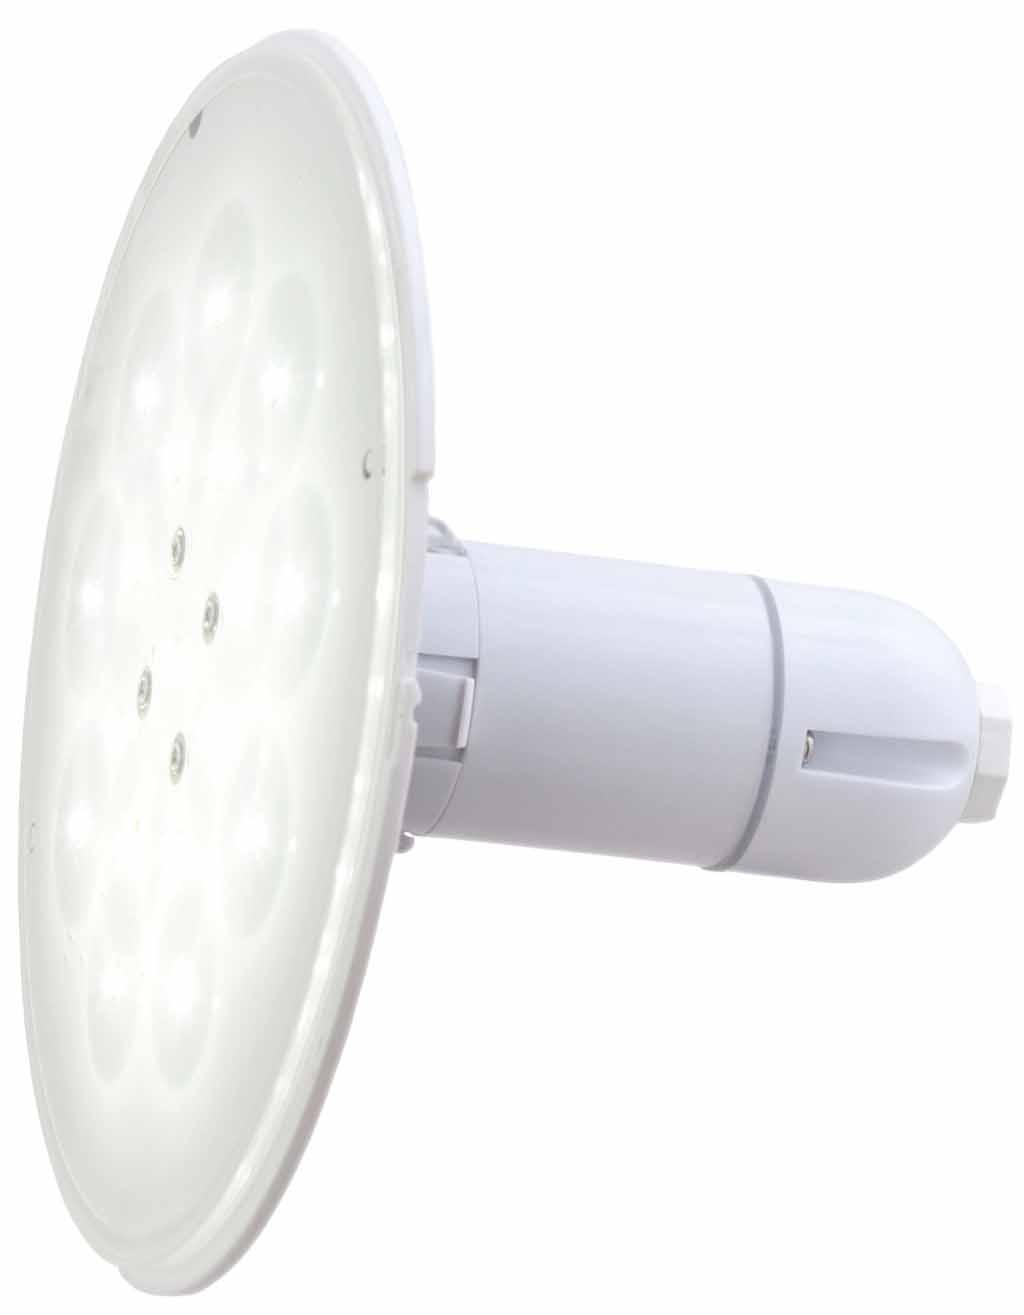 LED bílé světlo Adagio 65 W, svítivost 5 400 lm, instalační prvek pro fólii, 